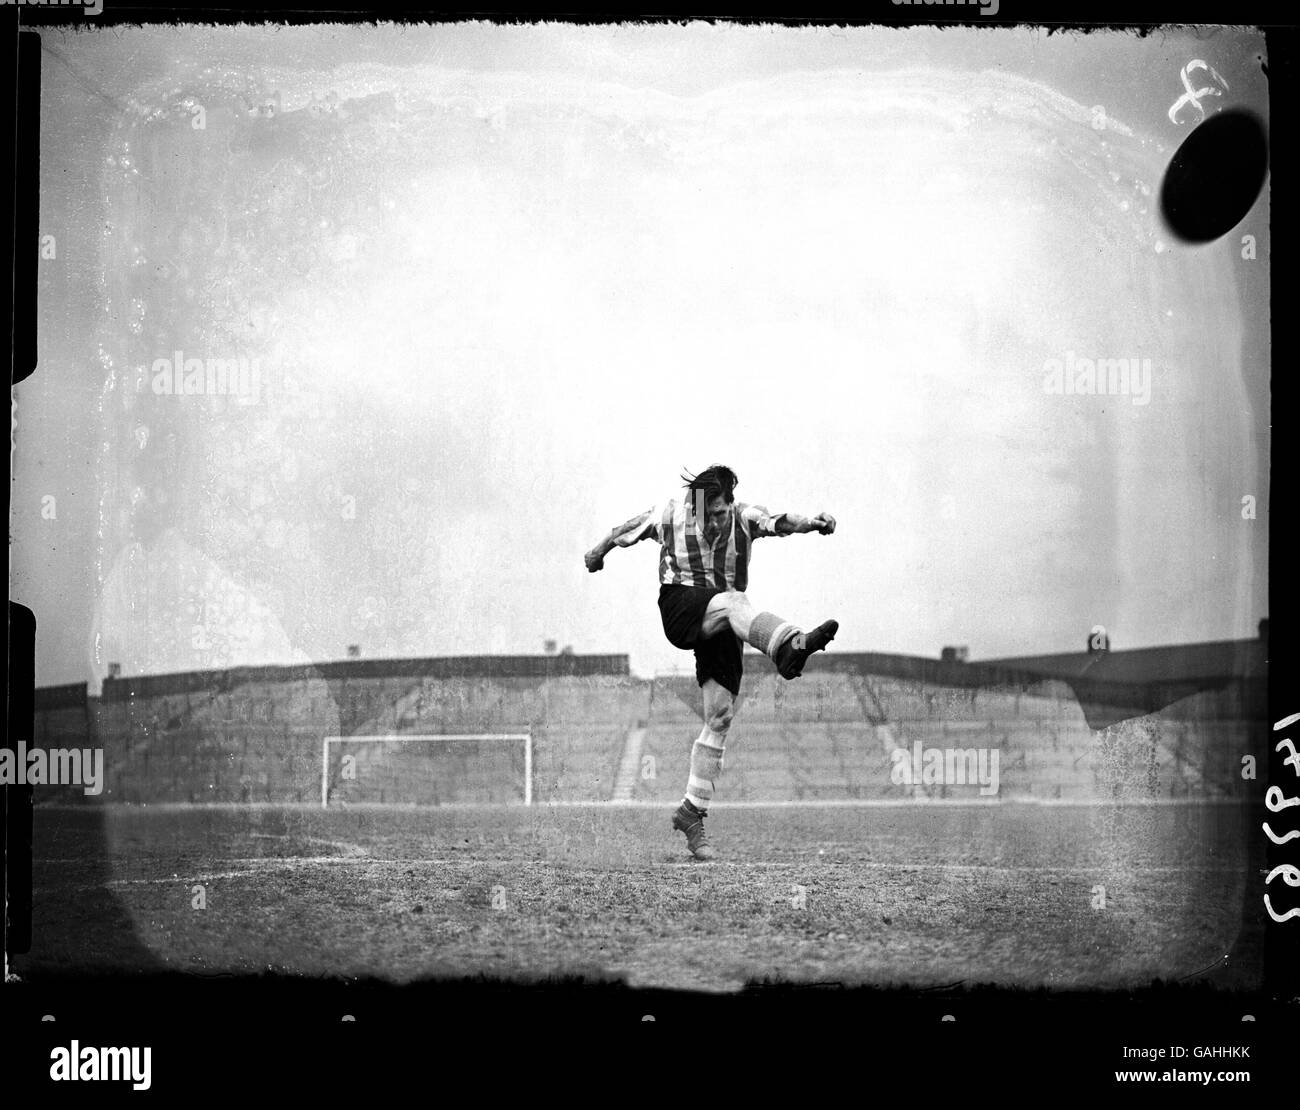 Fútbol - División de la liga de fútbol Sunderland - Formación Foto de stock